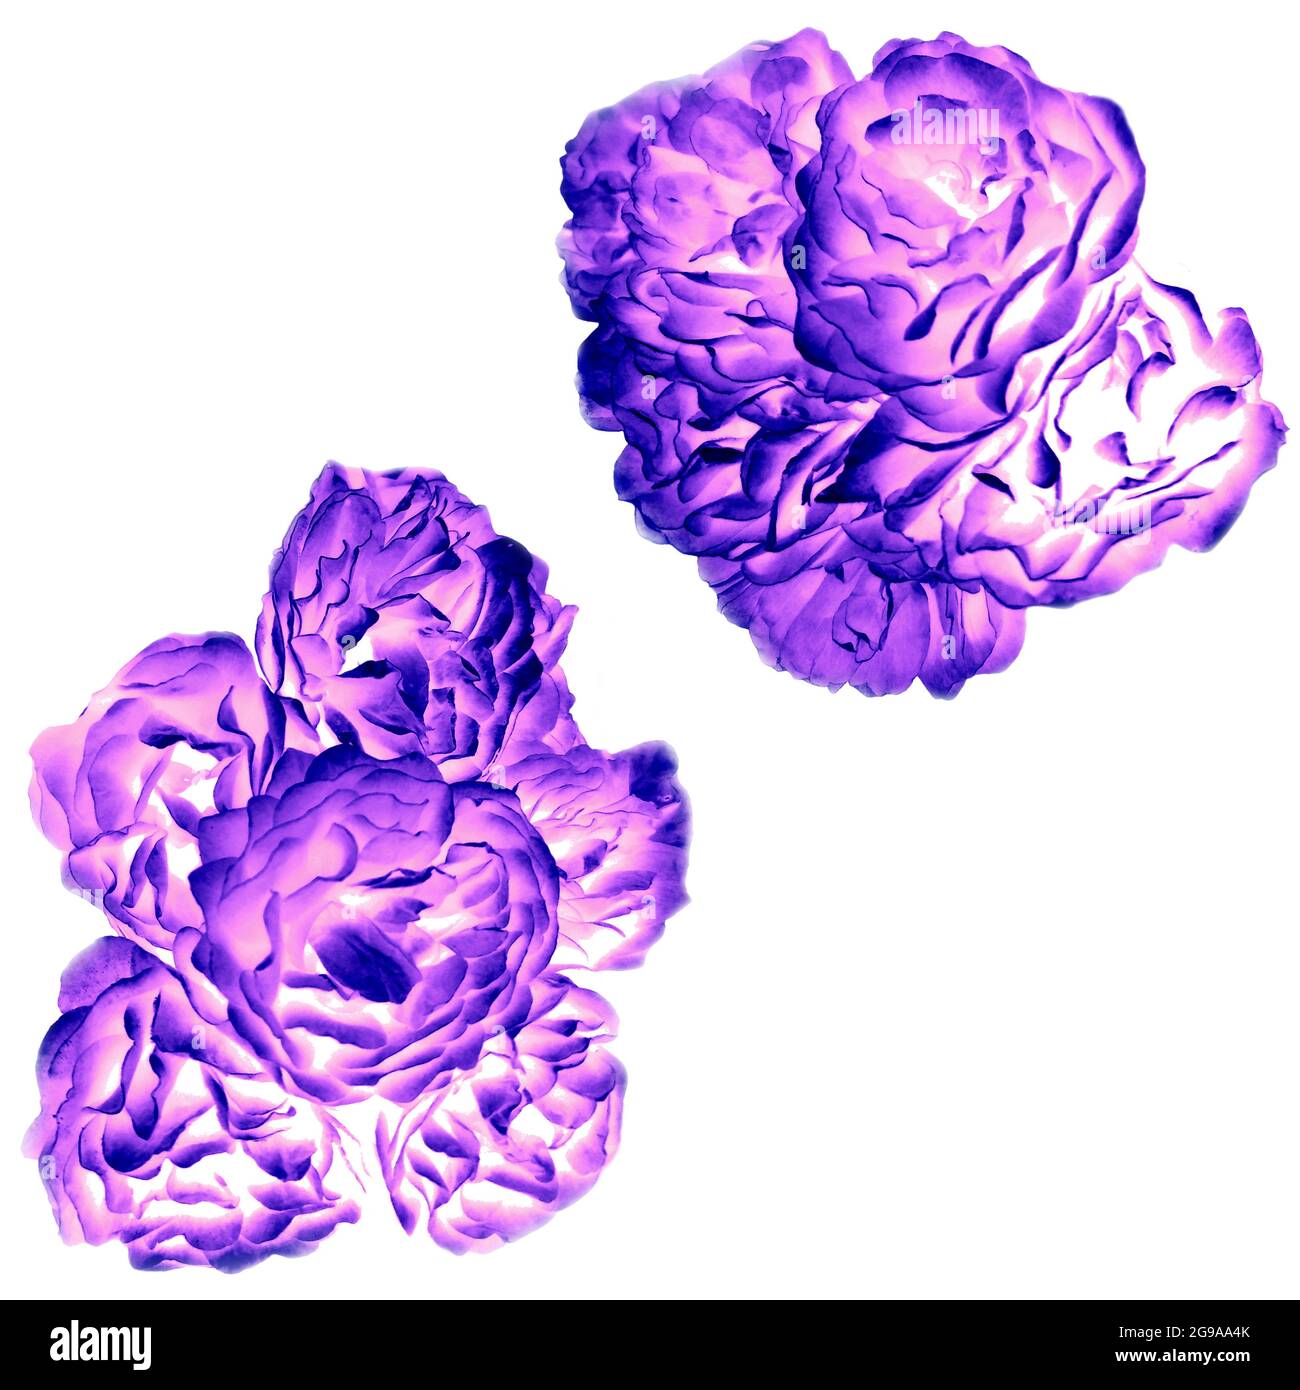 Rosa viola bouquet di rose gemma illustrazione digitale set per copia spazio progetto. Collezione di oggetti in stile neon glowing con rose floreali estive. Foto Stock